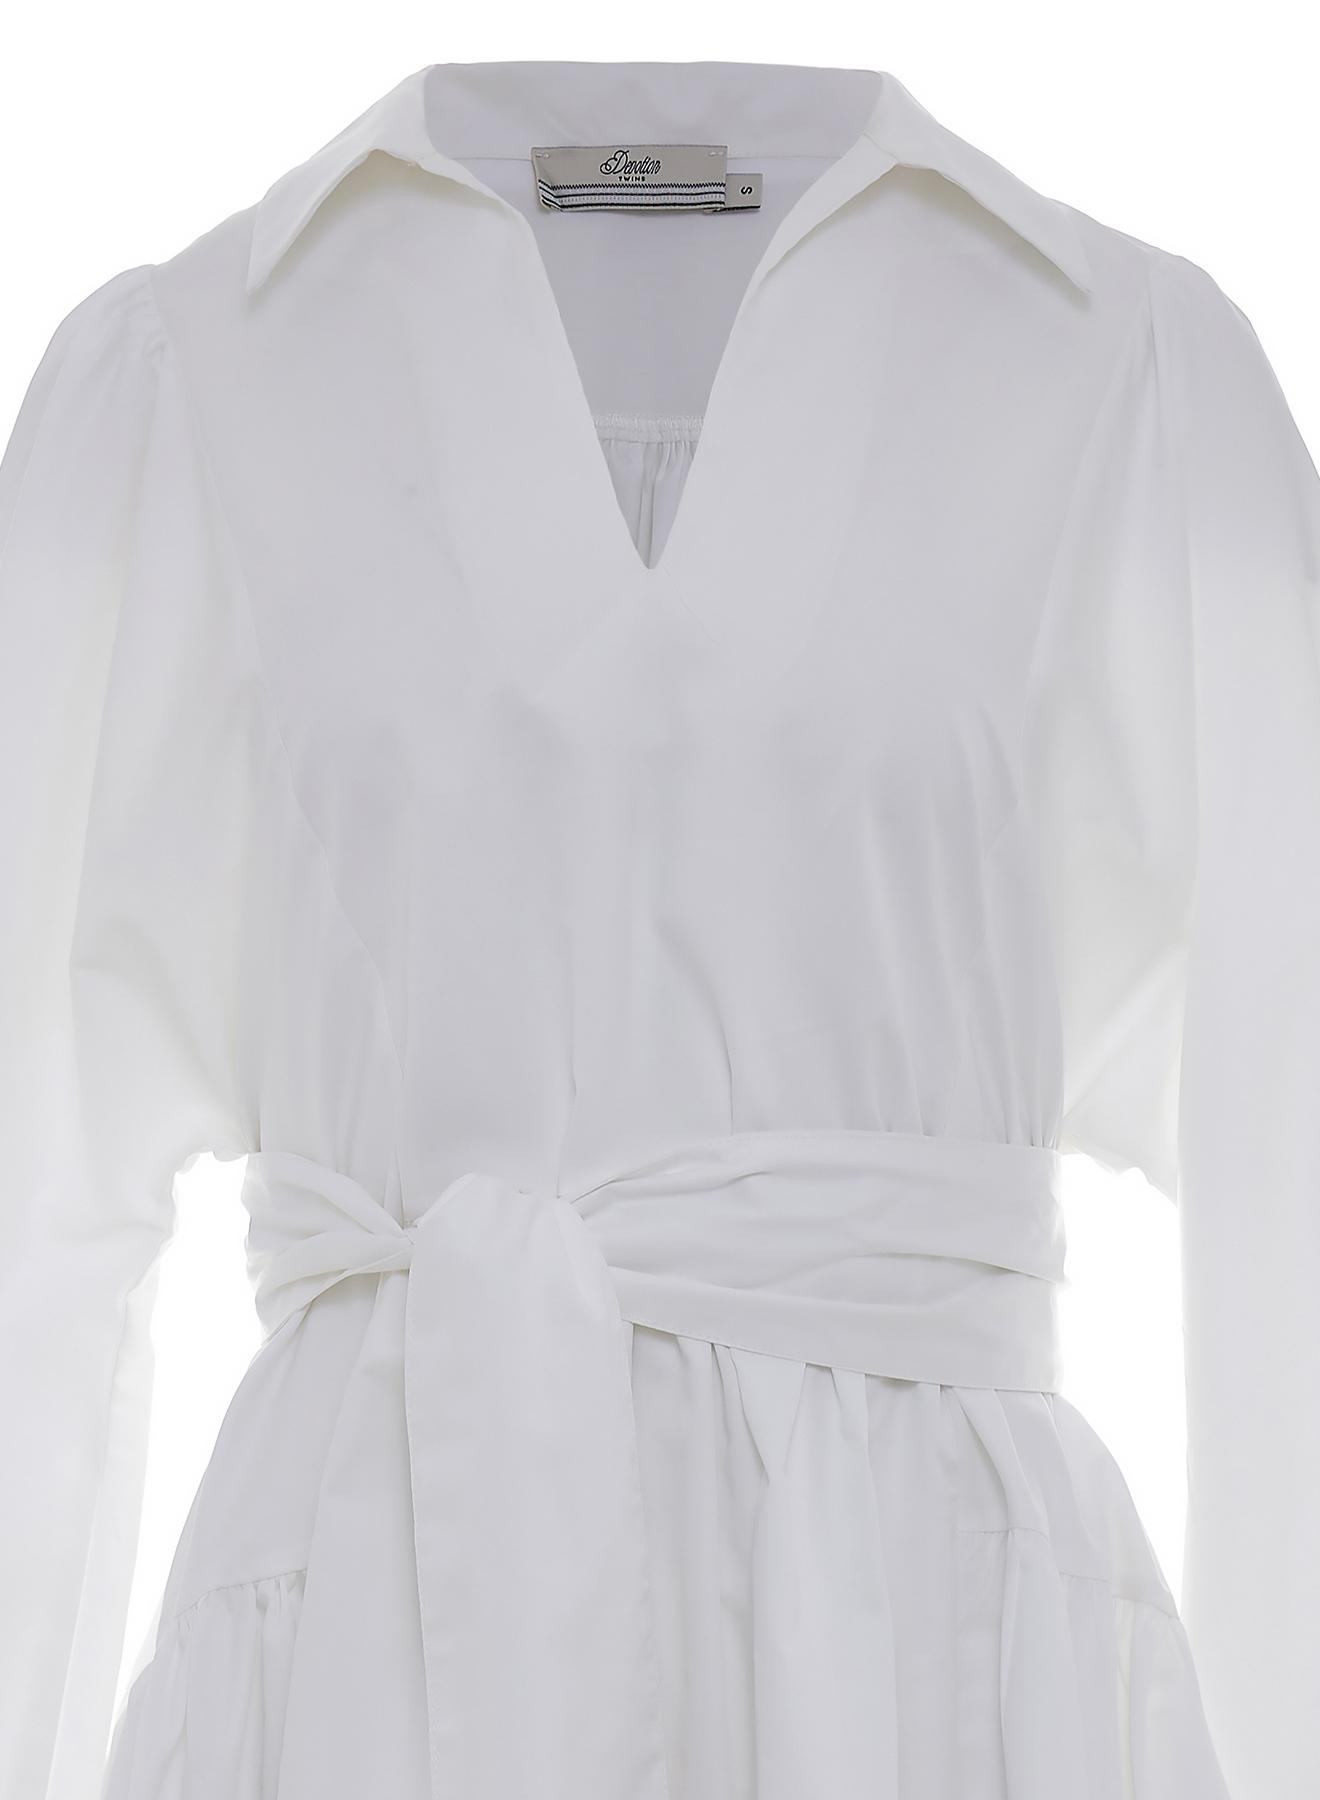 Λευκό κοντό Φόρεμα ποπλίνα με ζώνη "MARLEE" Devotion Twins - 3